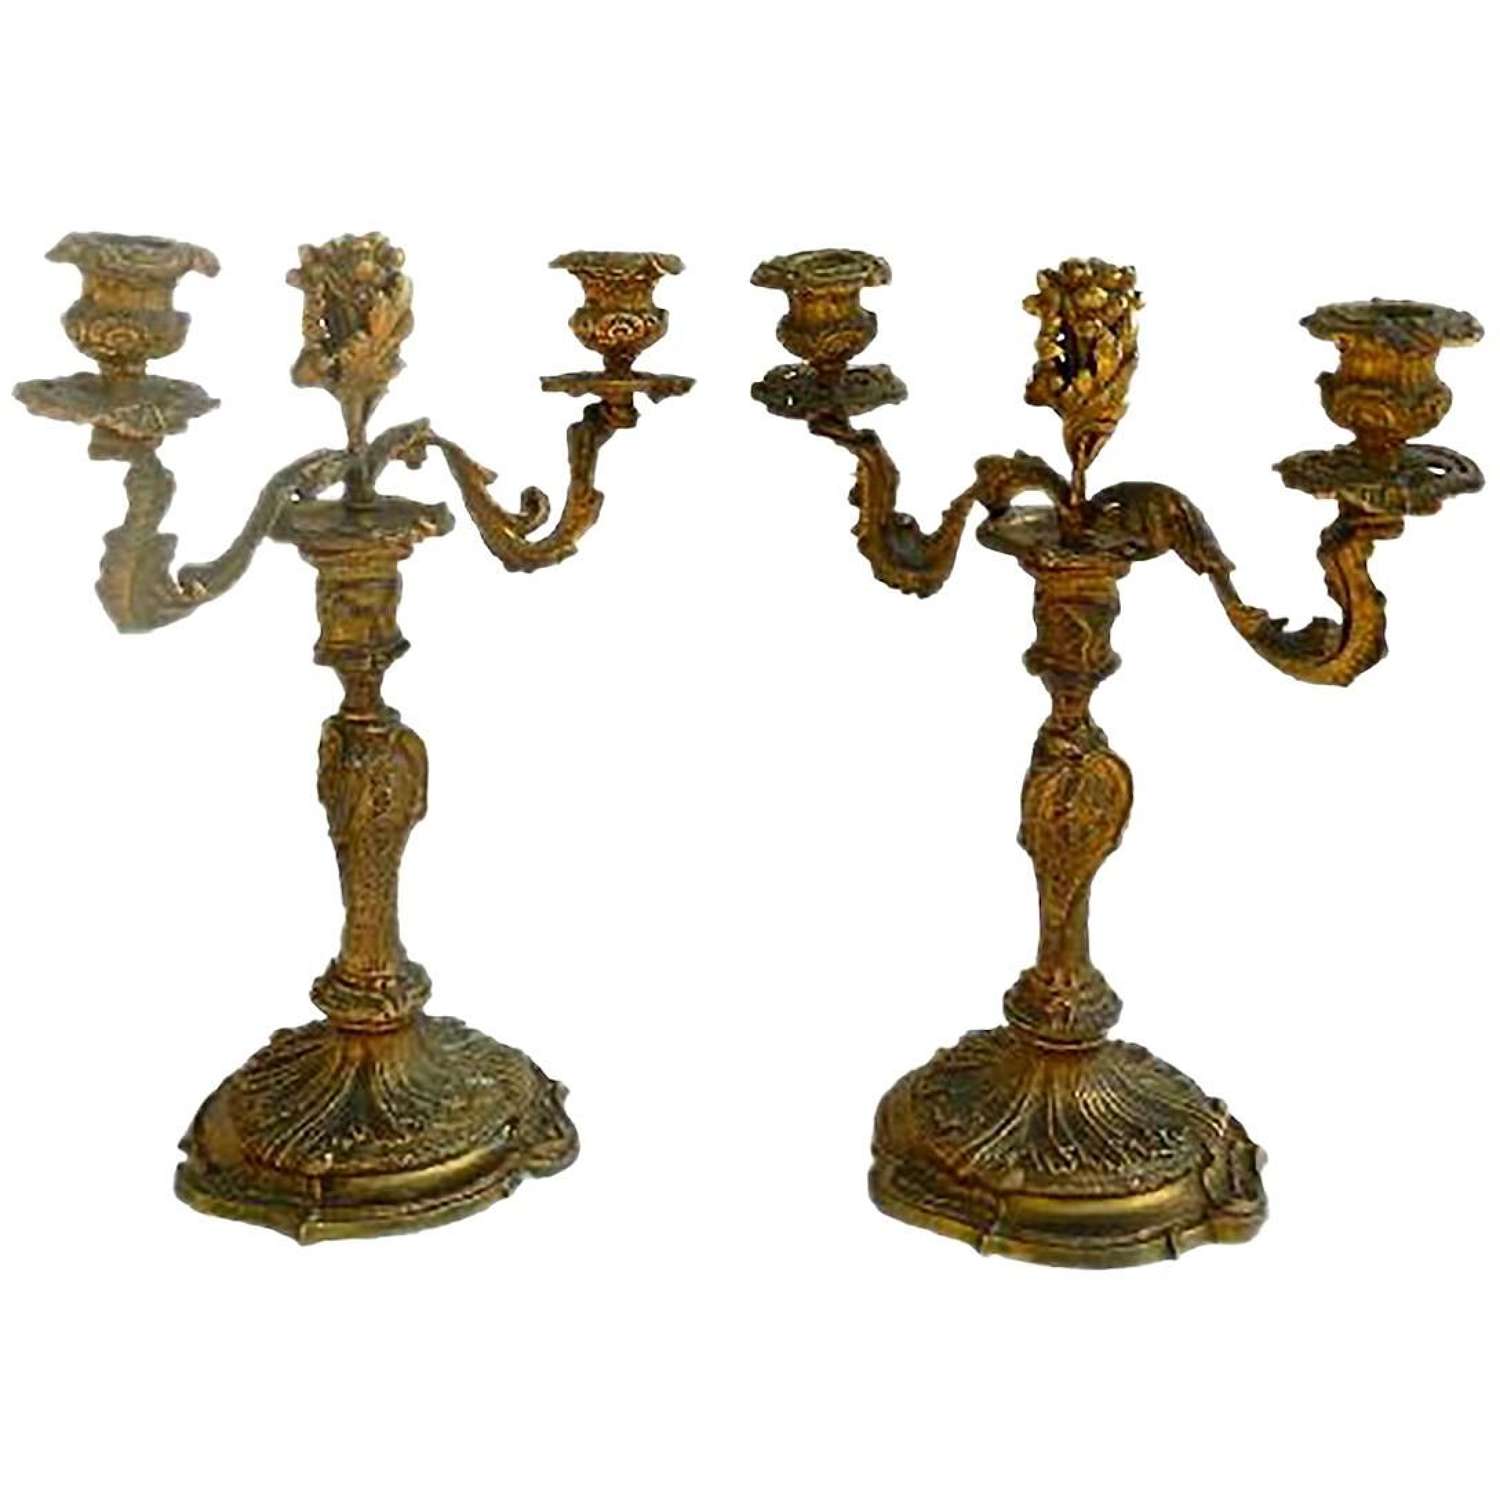 Candelabra Ormolu Gilt Bronze French Candlesticks Louis XV circa 1850 FREE SHIP